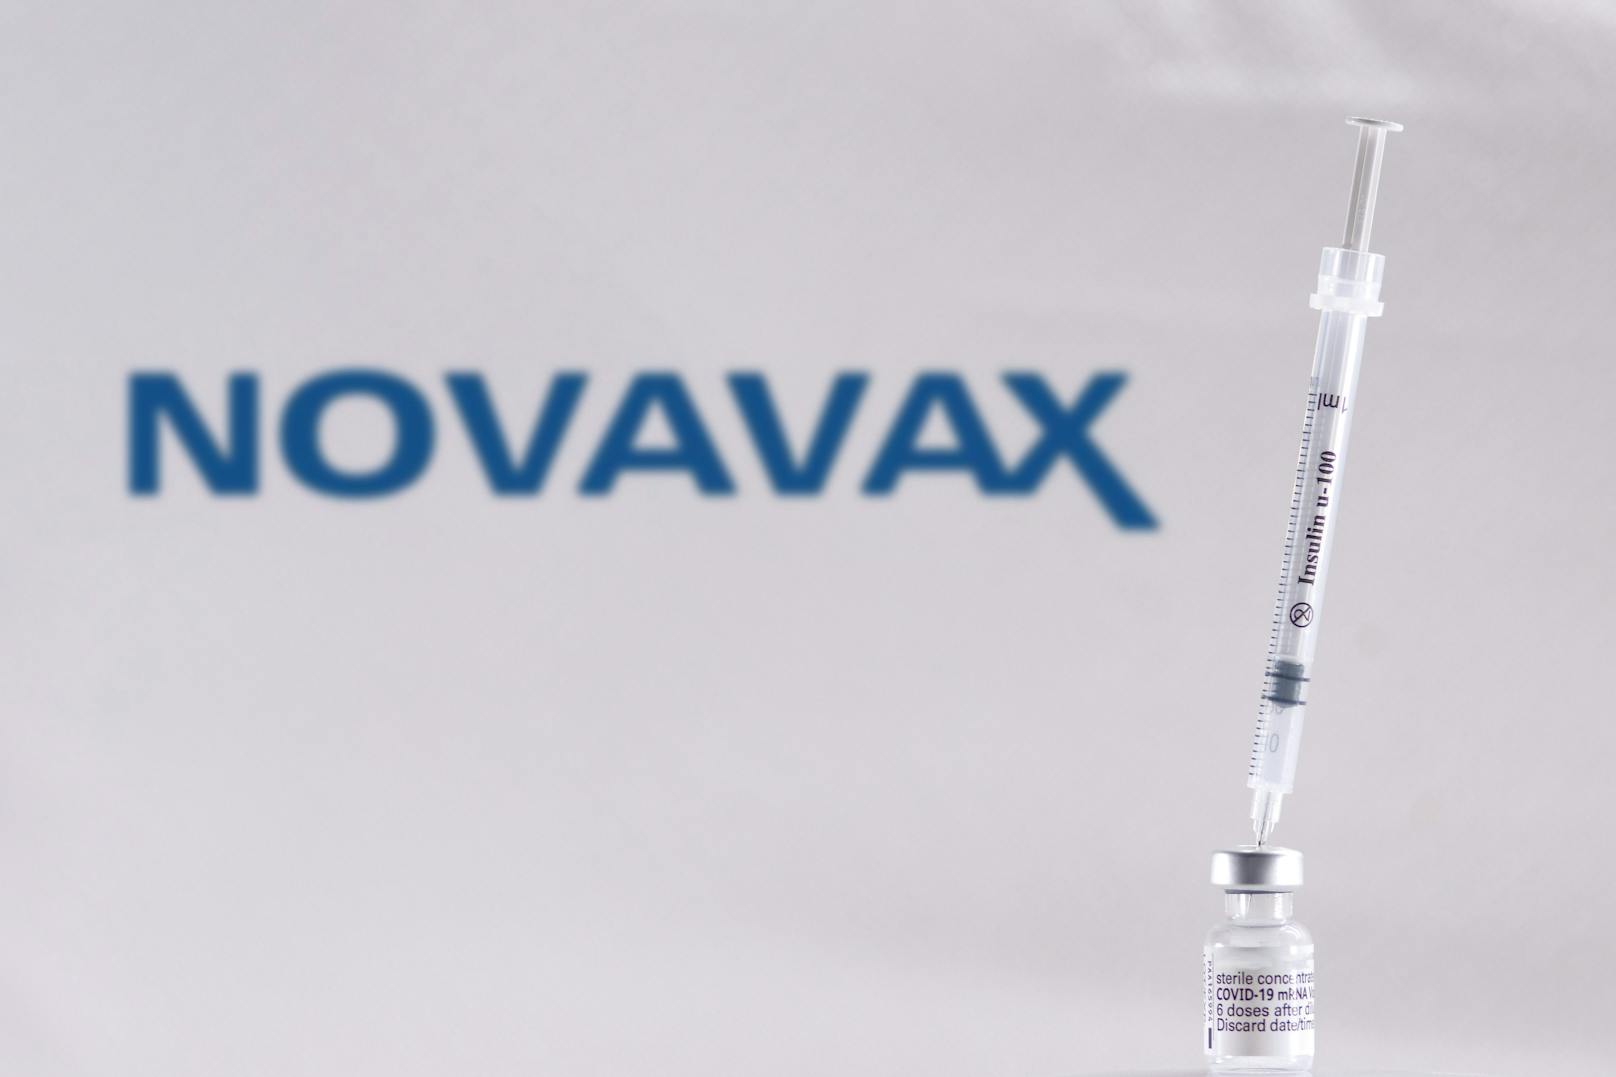 Vorregistrierung für Novavax-Impfung startet in NÖ